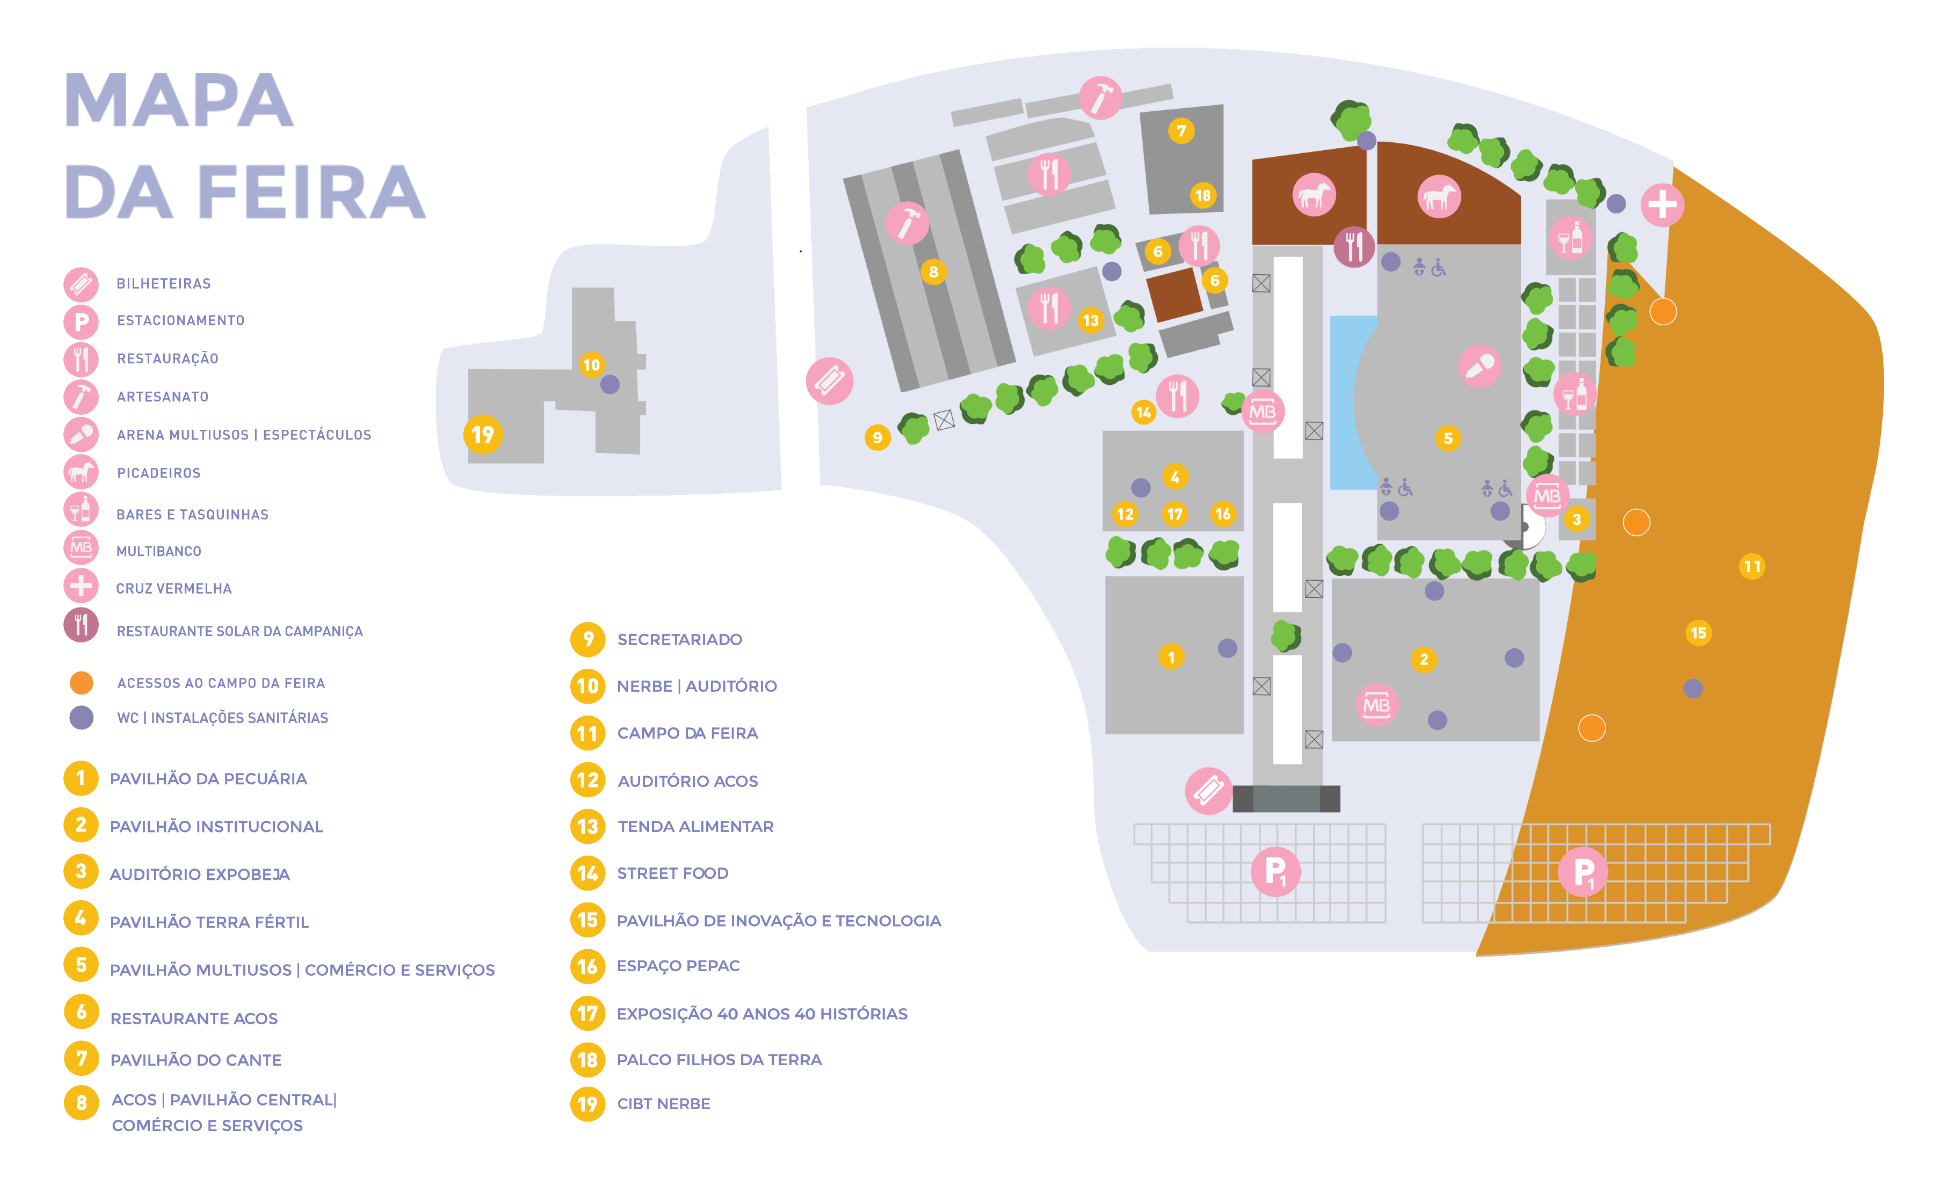 Mapa da feira